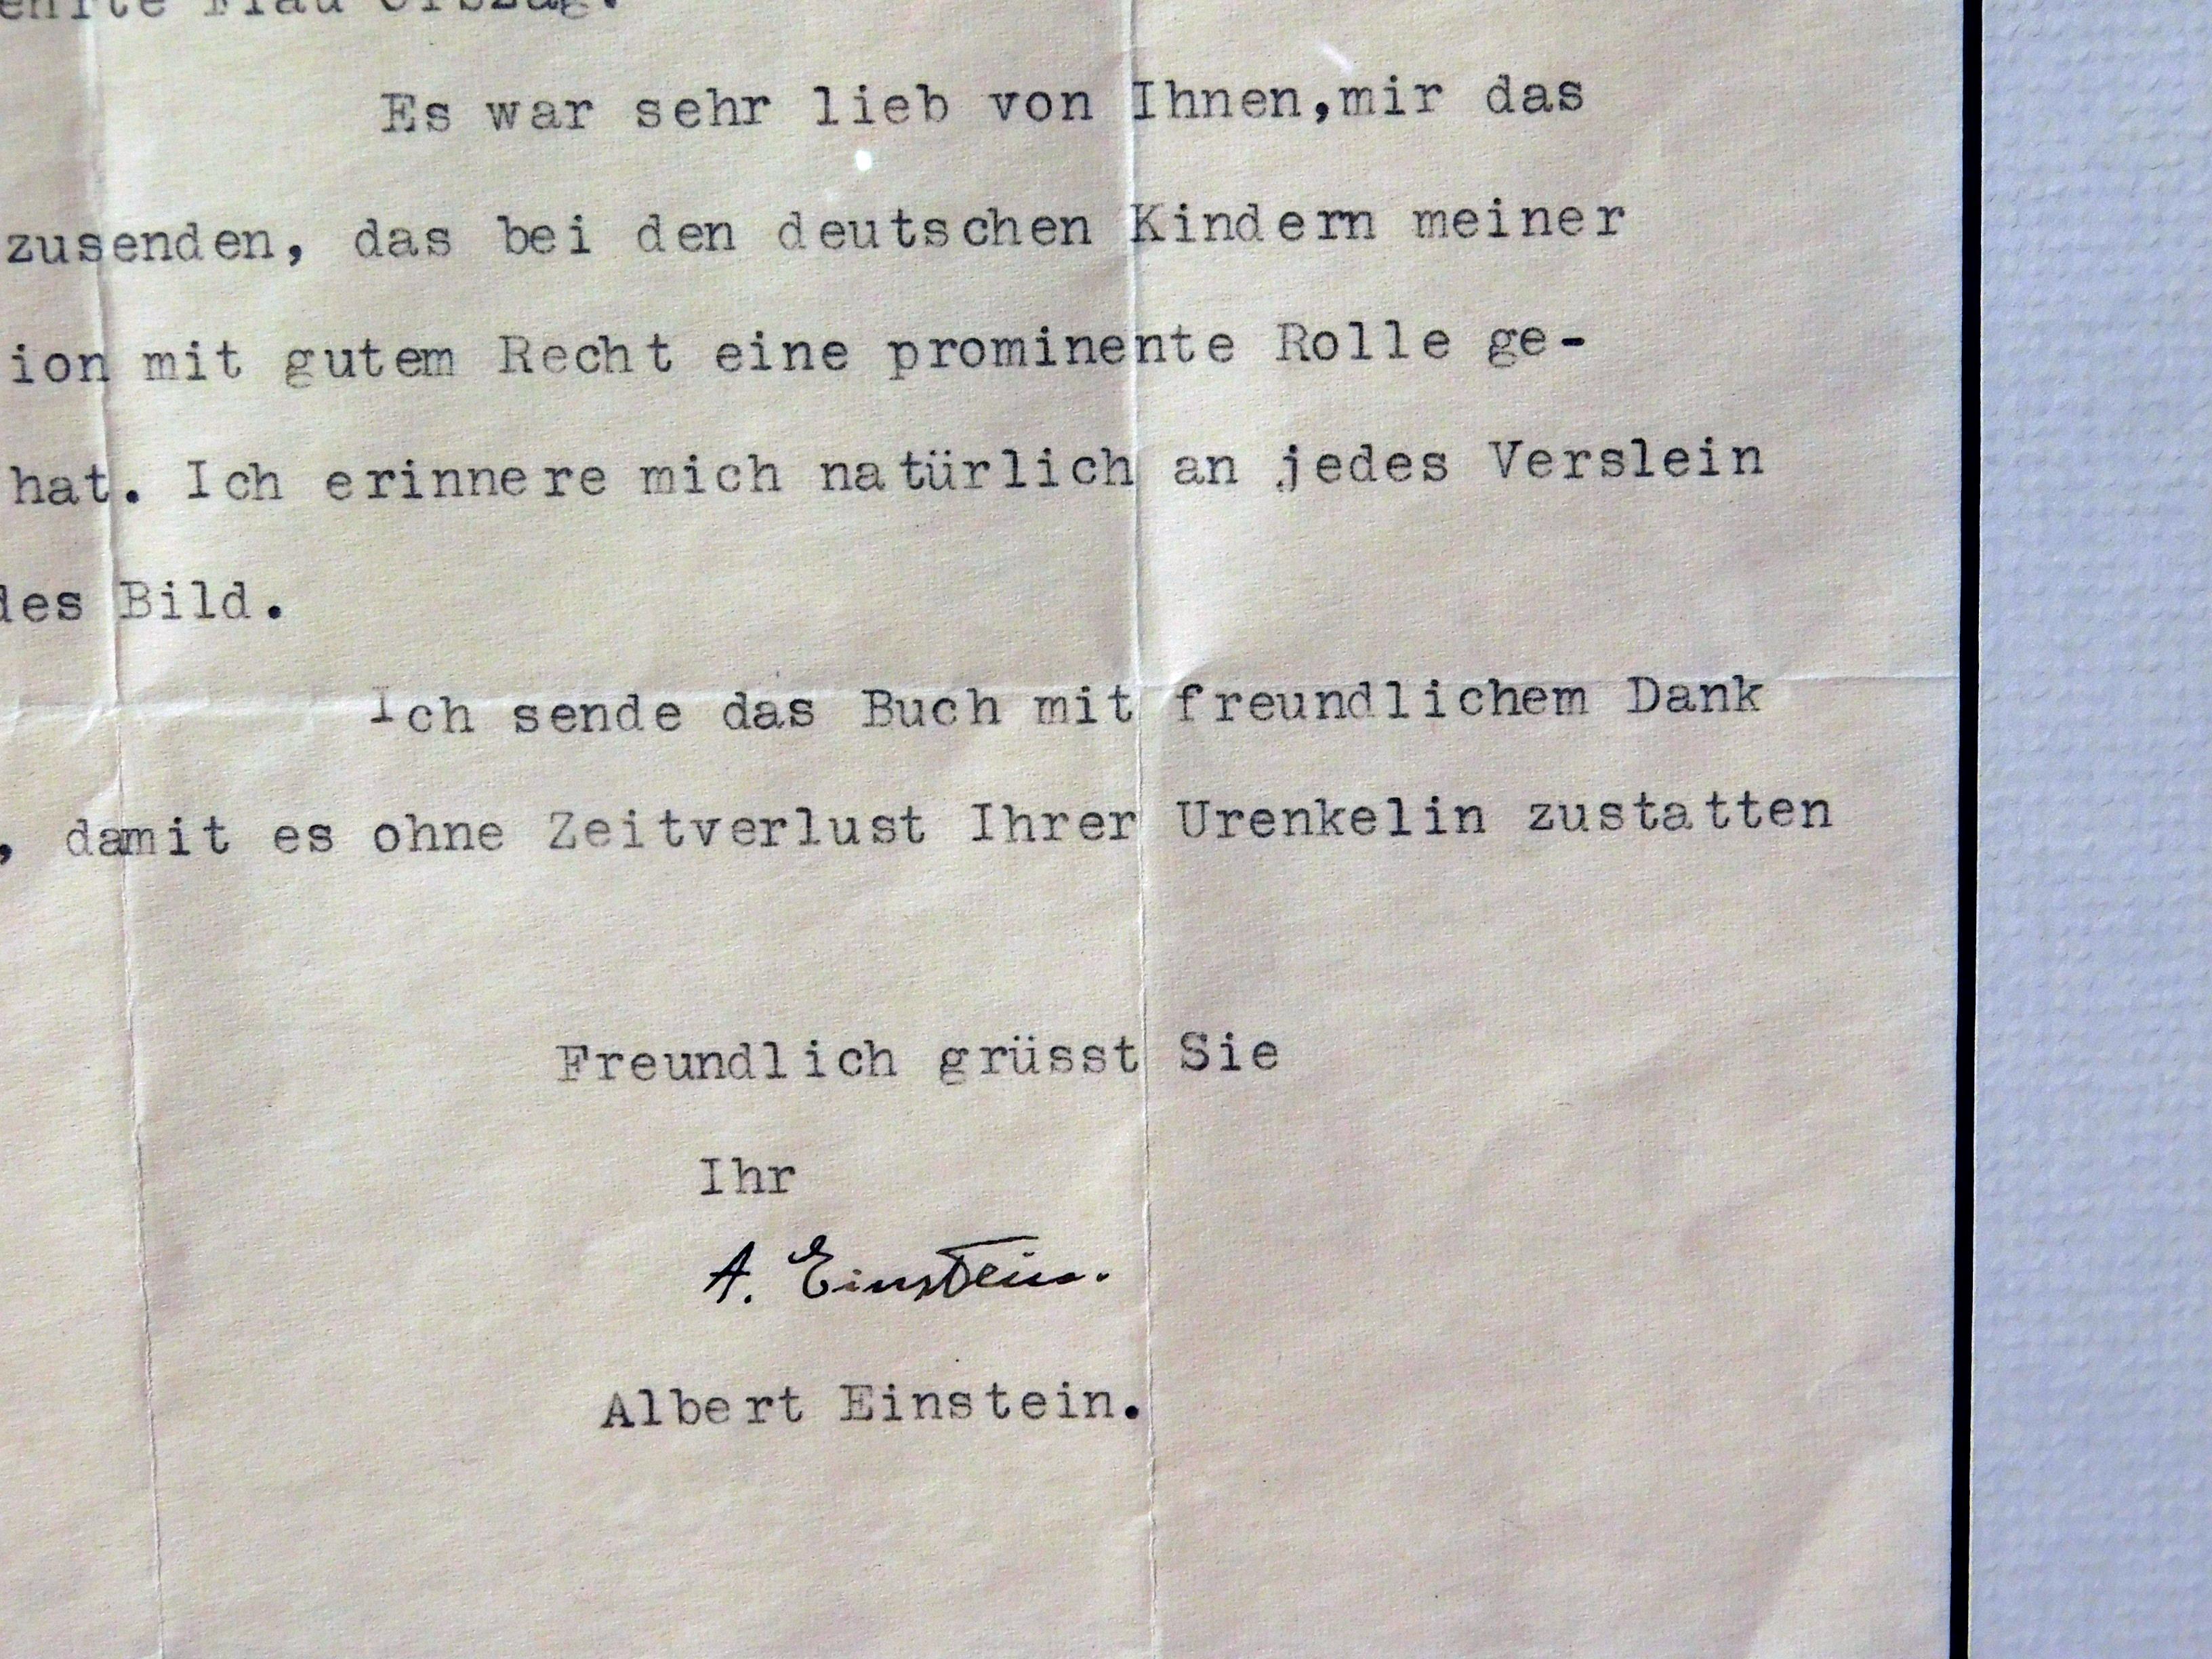 Dies ist ein maschinengeschriebener Brief von Albert Einstein an Frau Clotilde Orszag aus New York 
handsigniert von dem bekannten Physiker.
Der Brief ist in deutscher Sprache verfasst und auf den 10. März 1951 datiert. 
Es ist unten mit Tinte